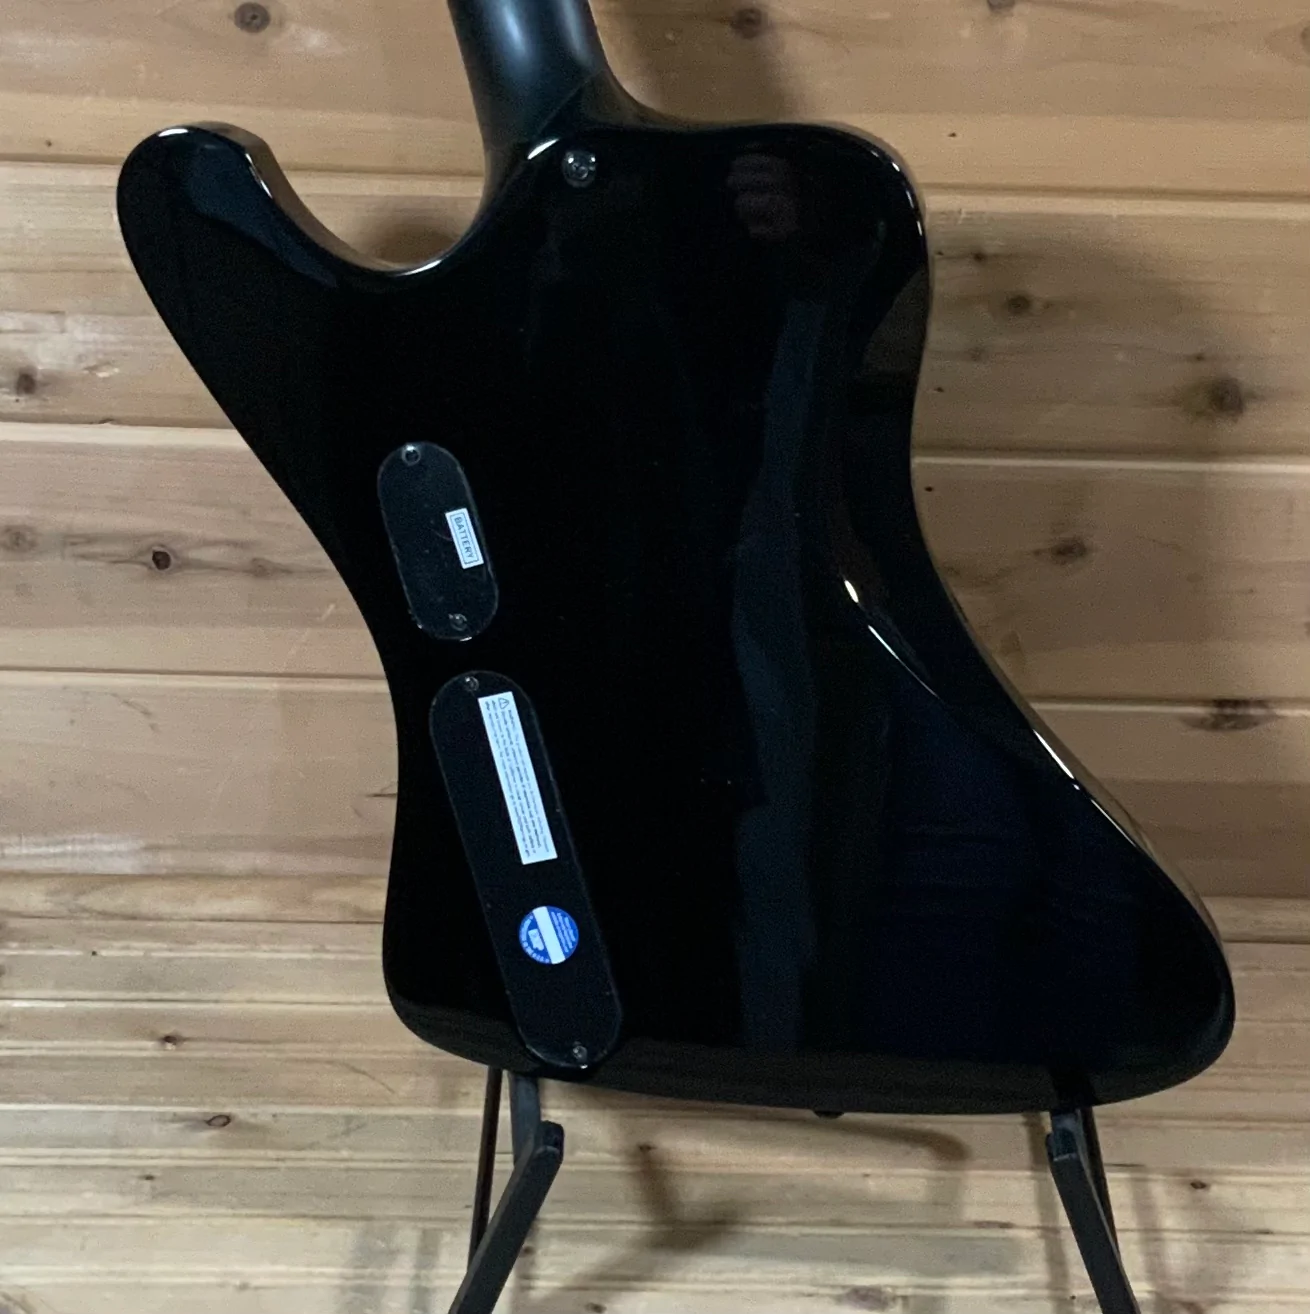 ESP Phoenix 1004 bass